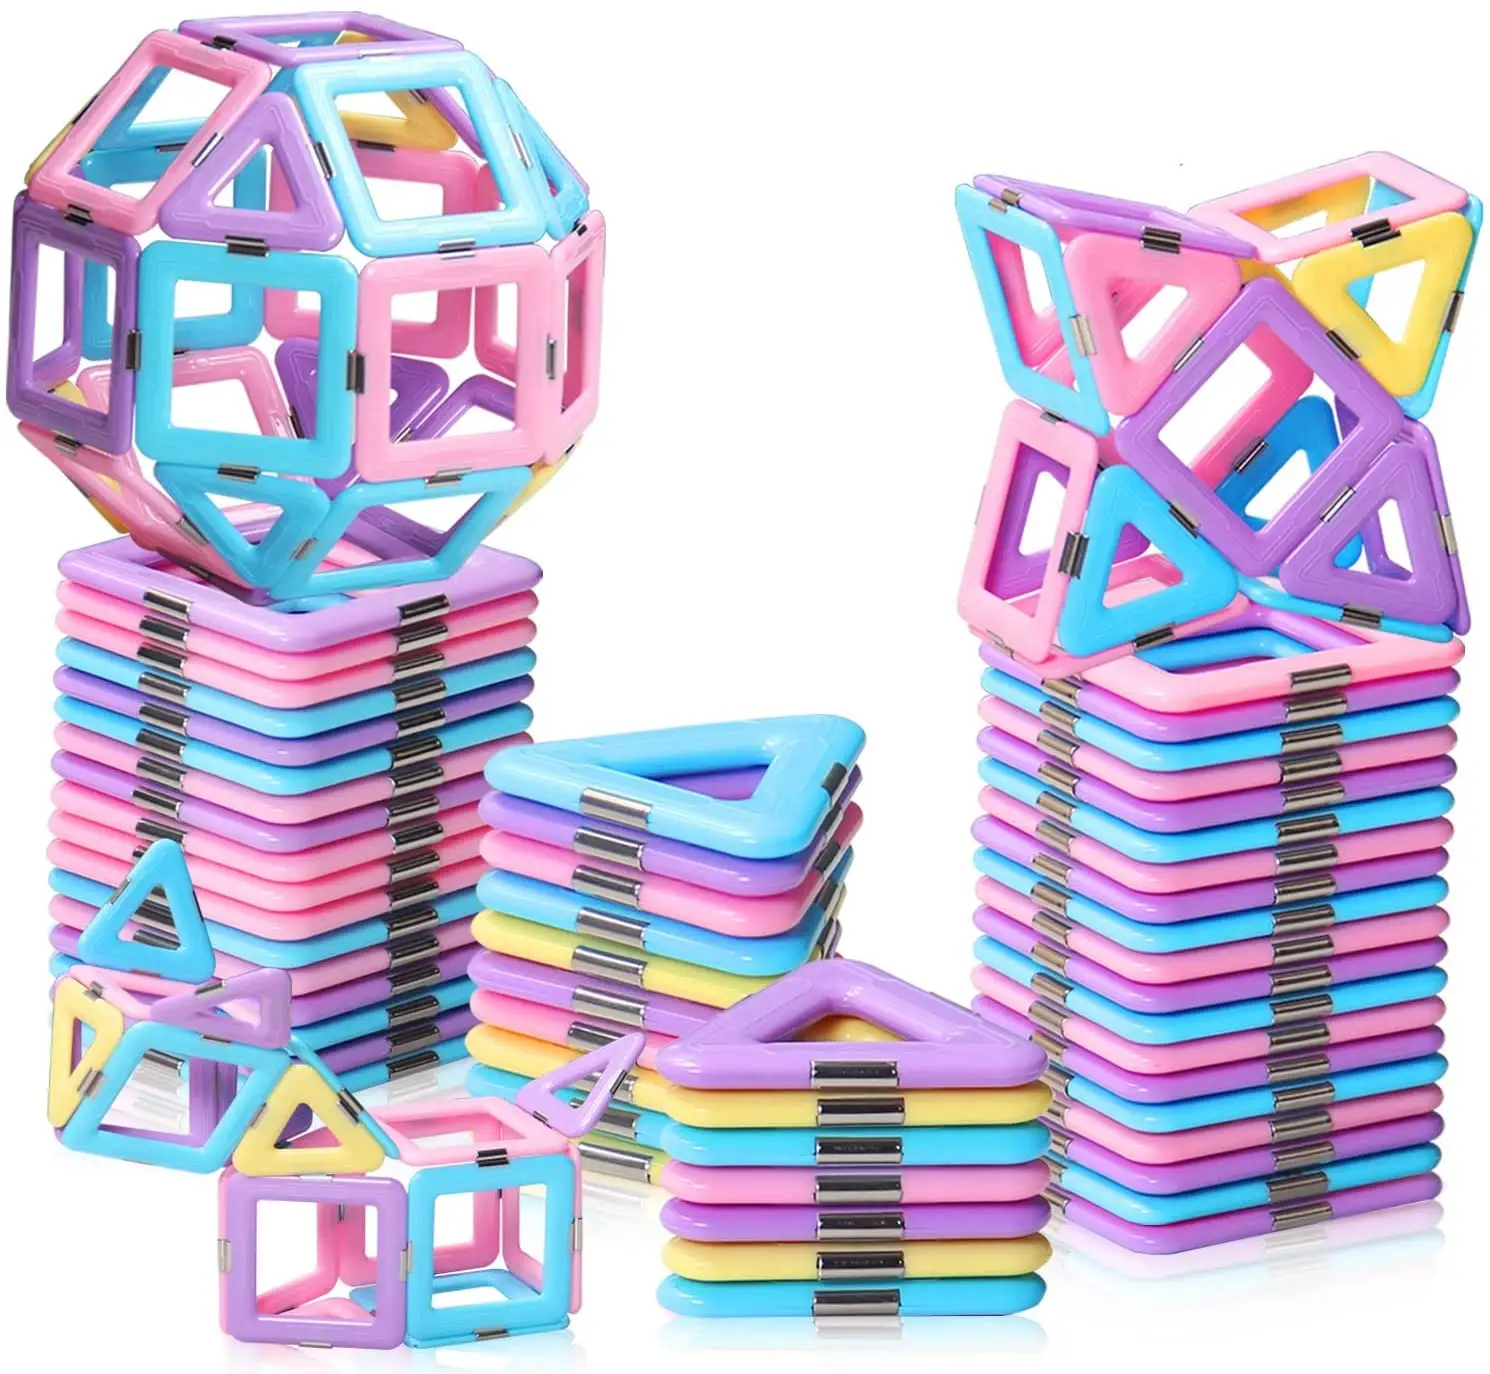 لعب مكعبات بلاستيكية مجموعة مكعبات بناء لعبة مغناطيس تشيييد T